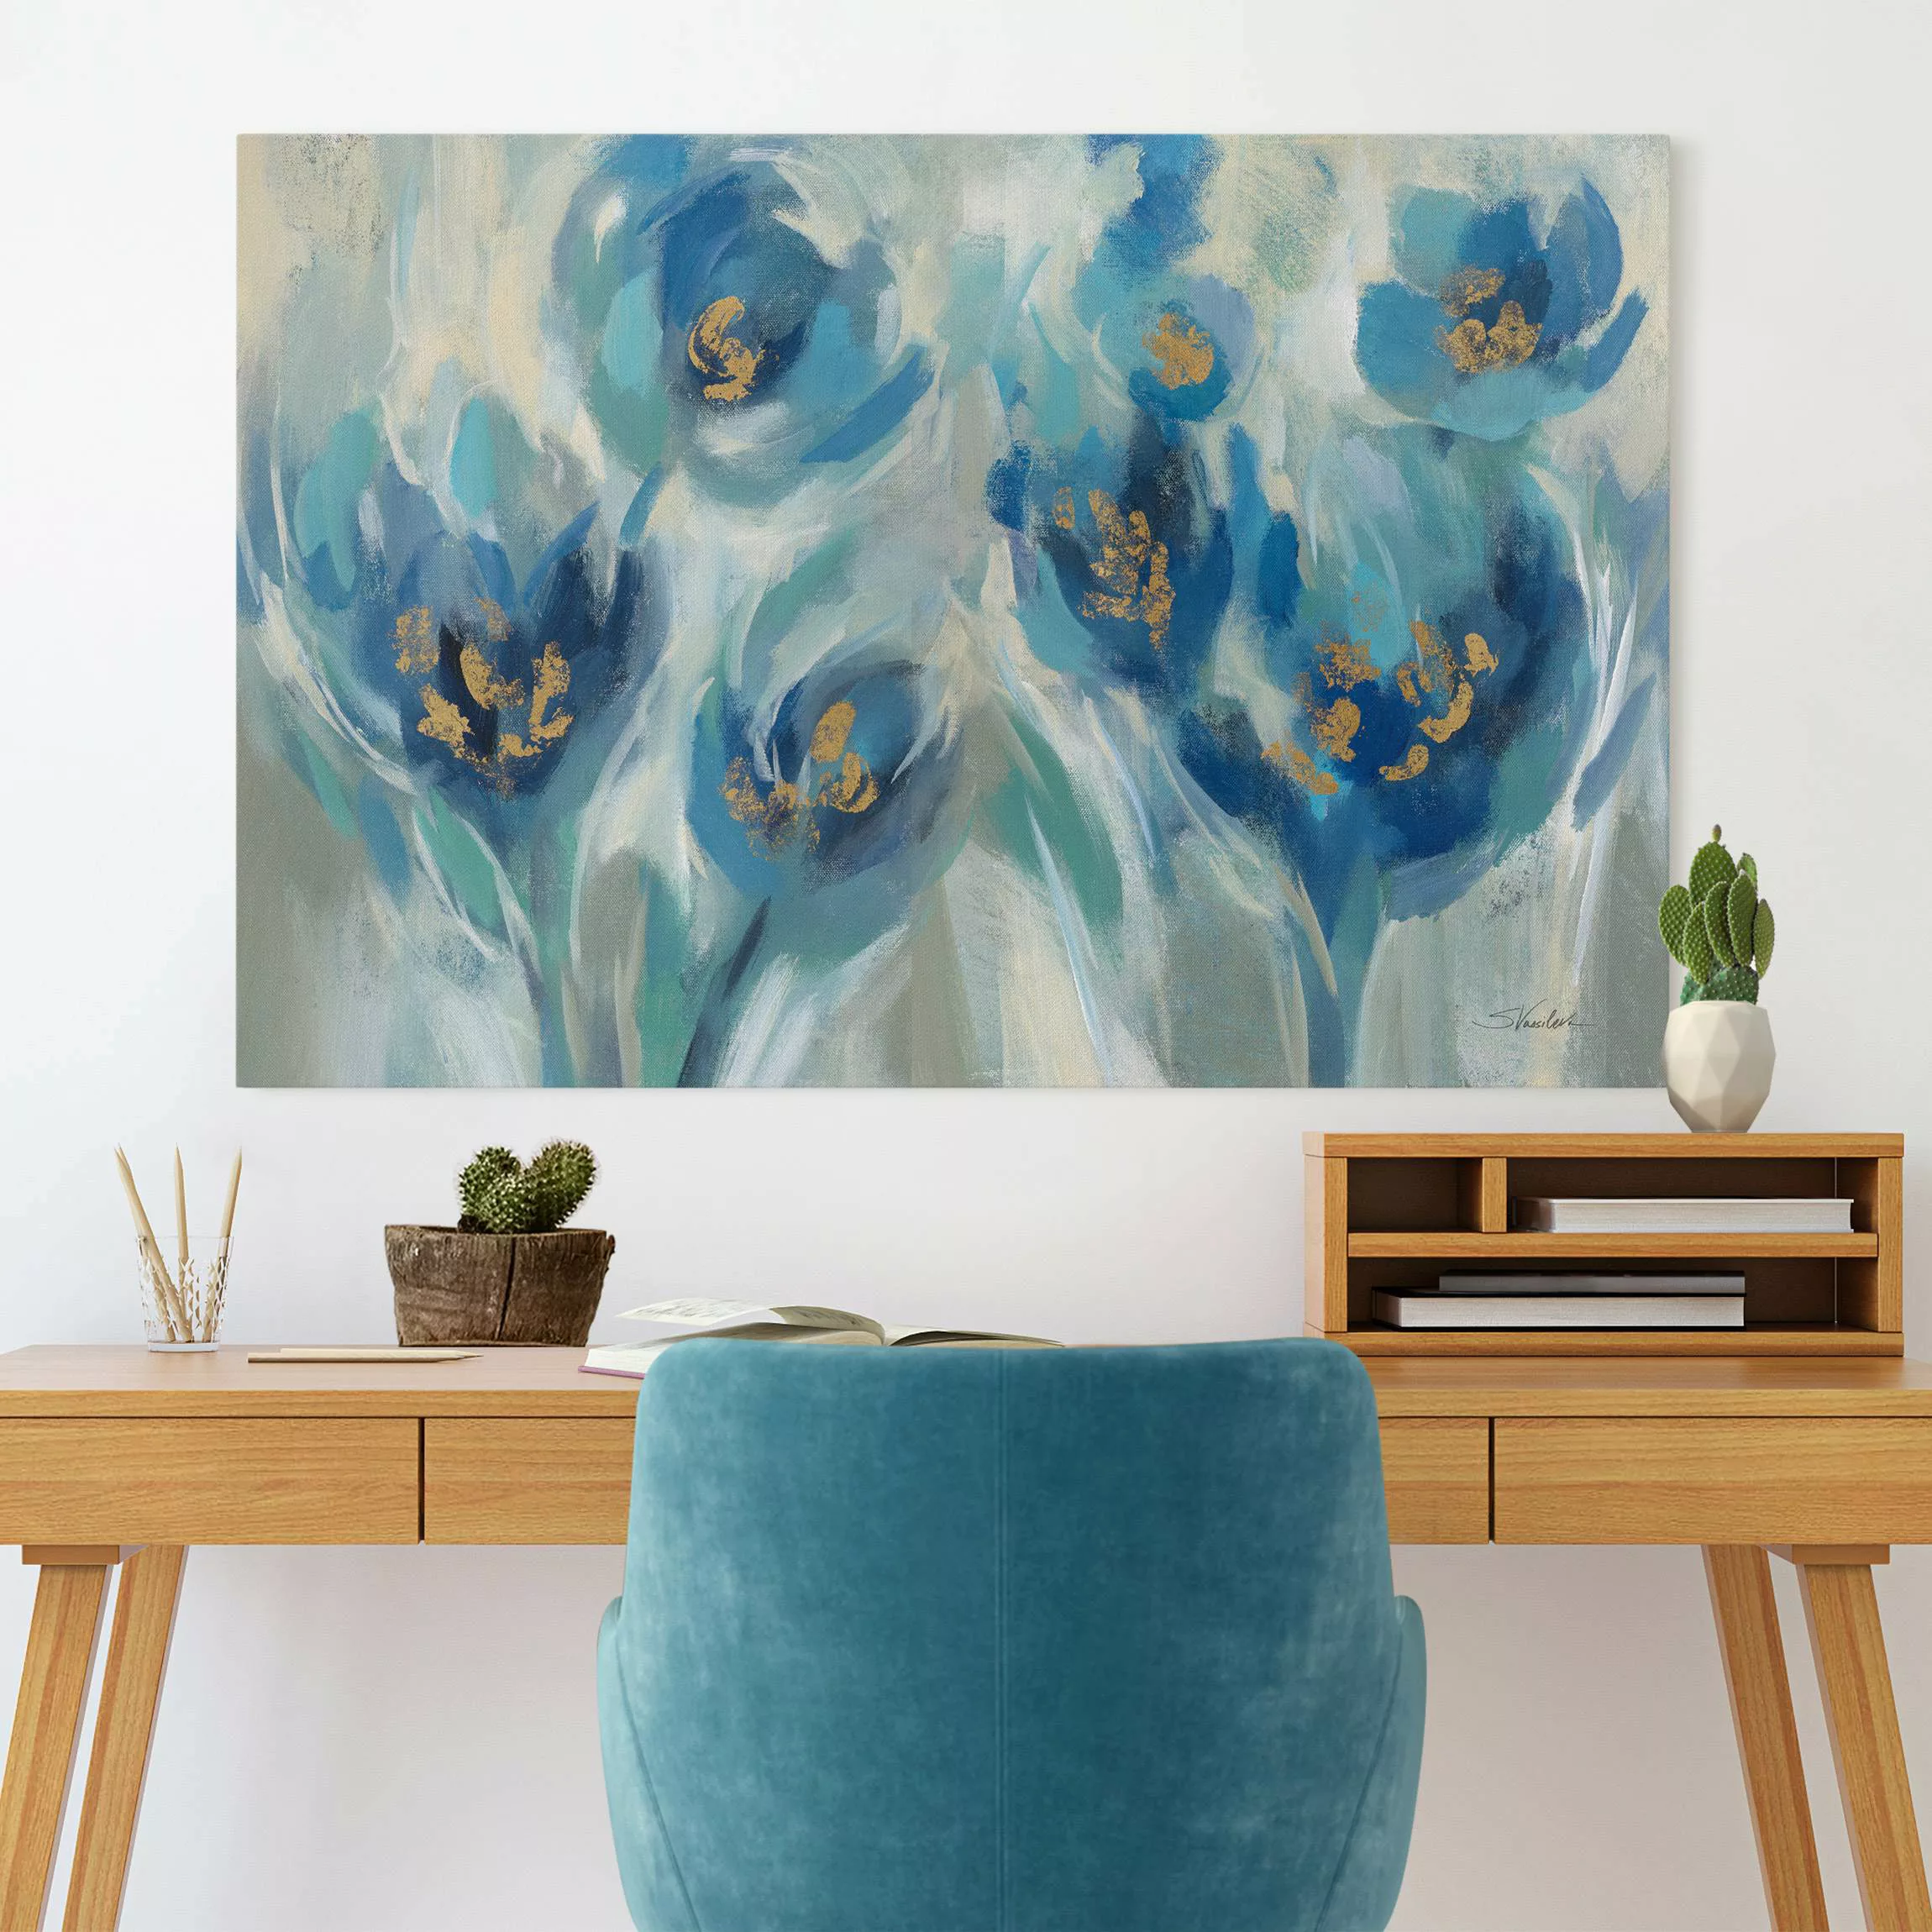 Leinwandbild Blaues Märchen mit Blumen günstig online kaufen